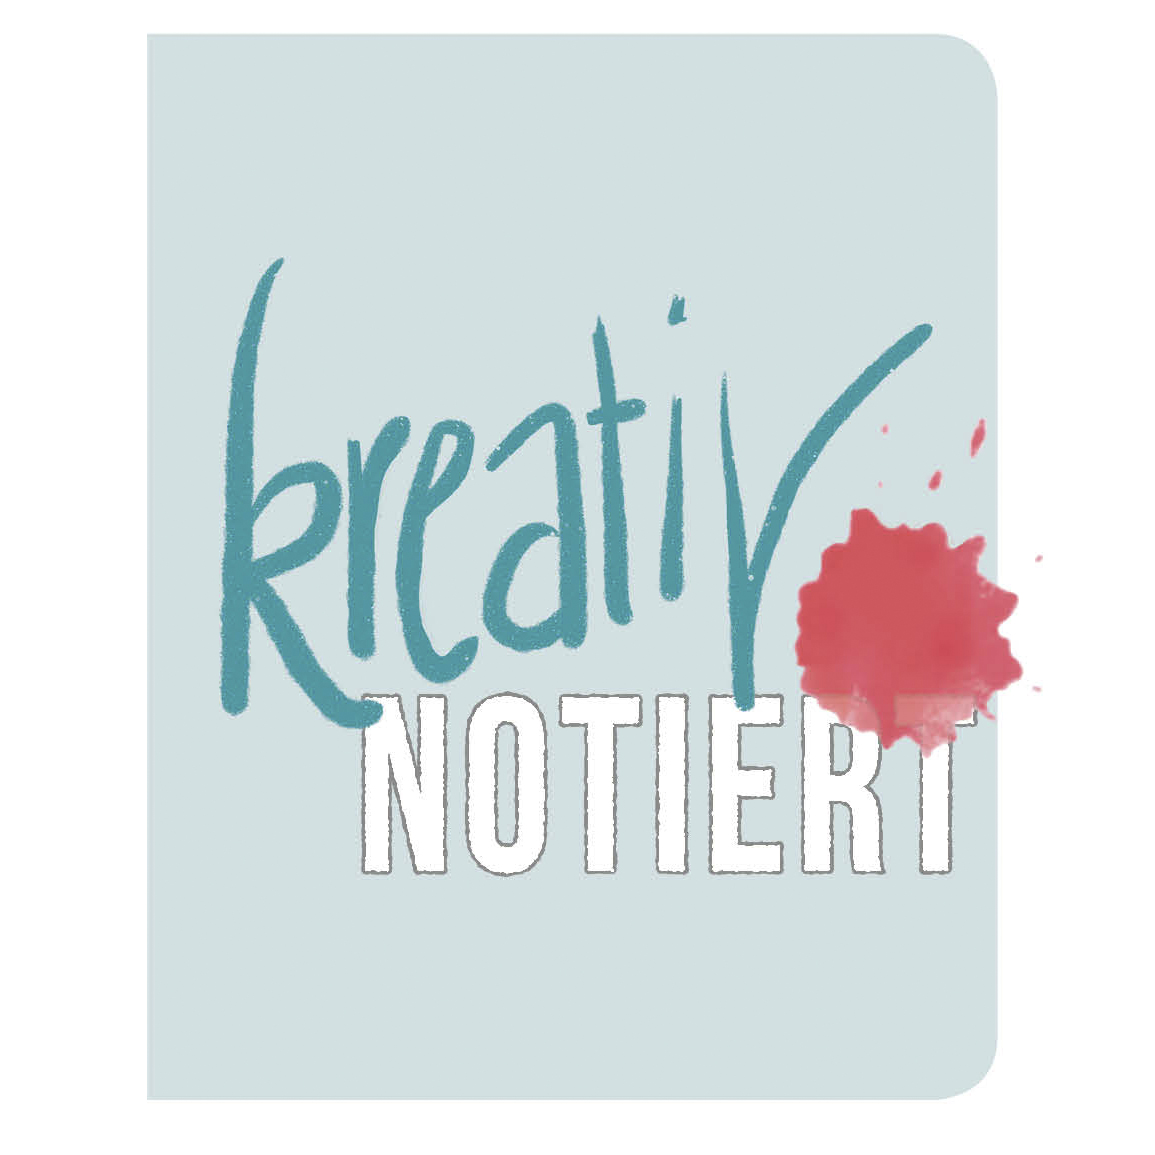 KreativNotiert_Logo Heft t _4c